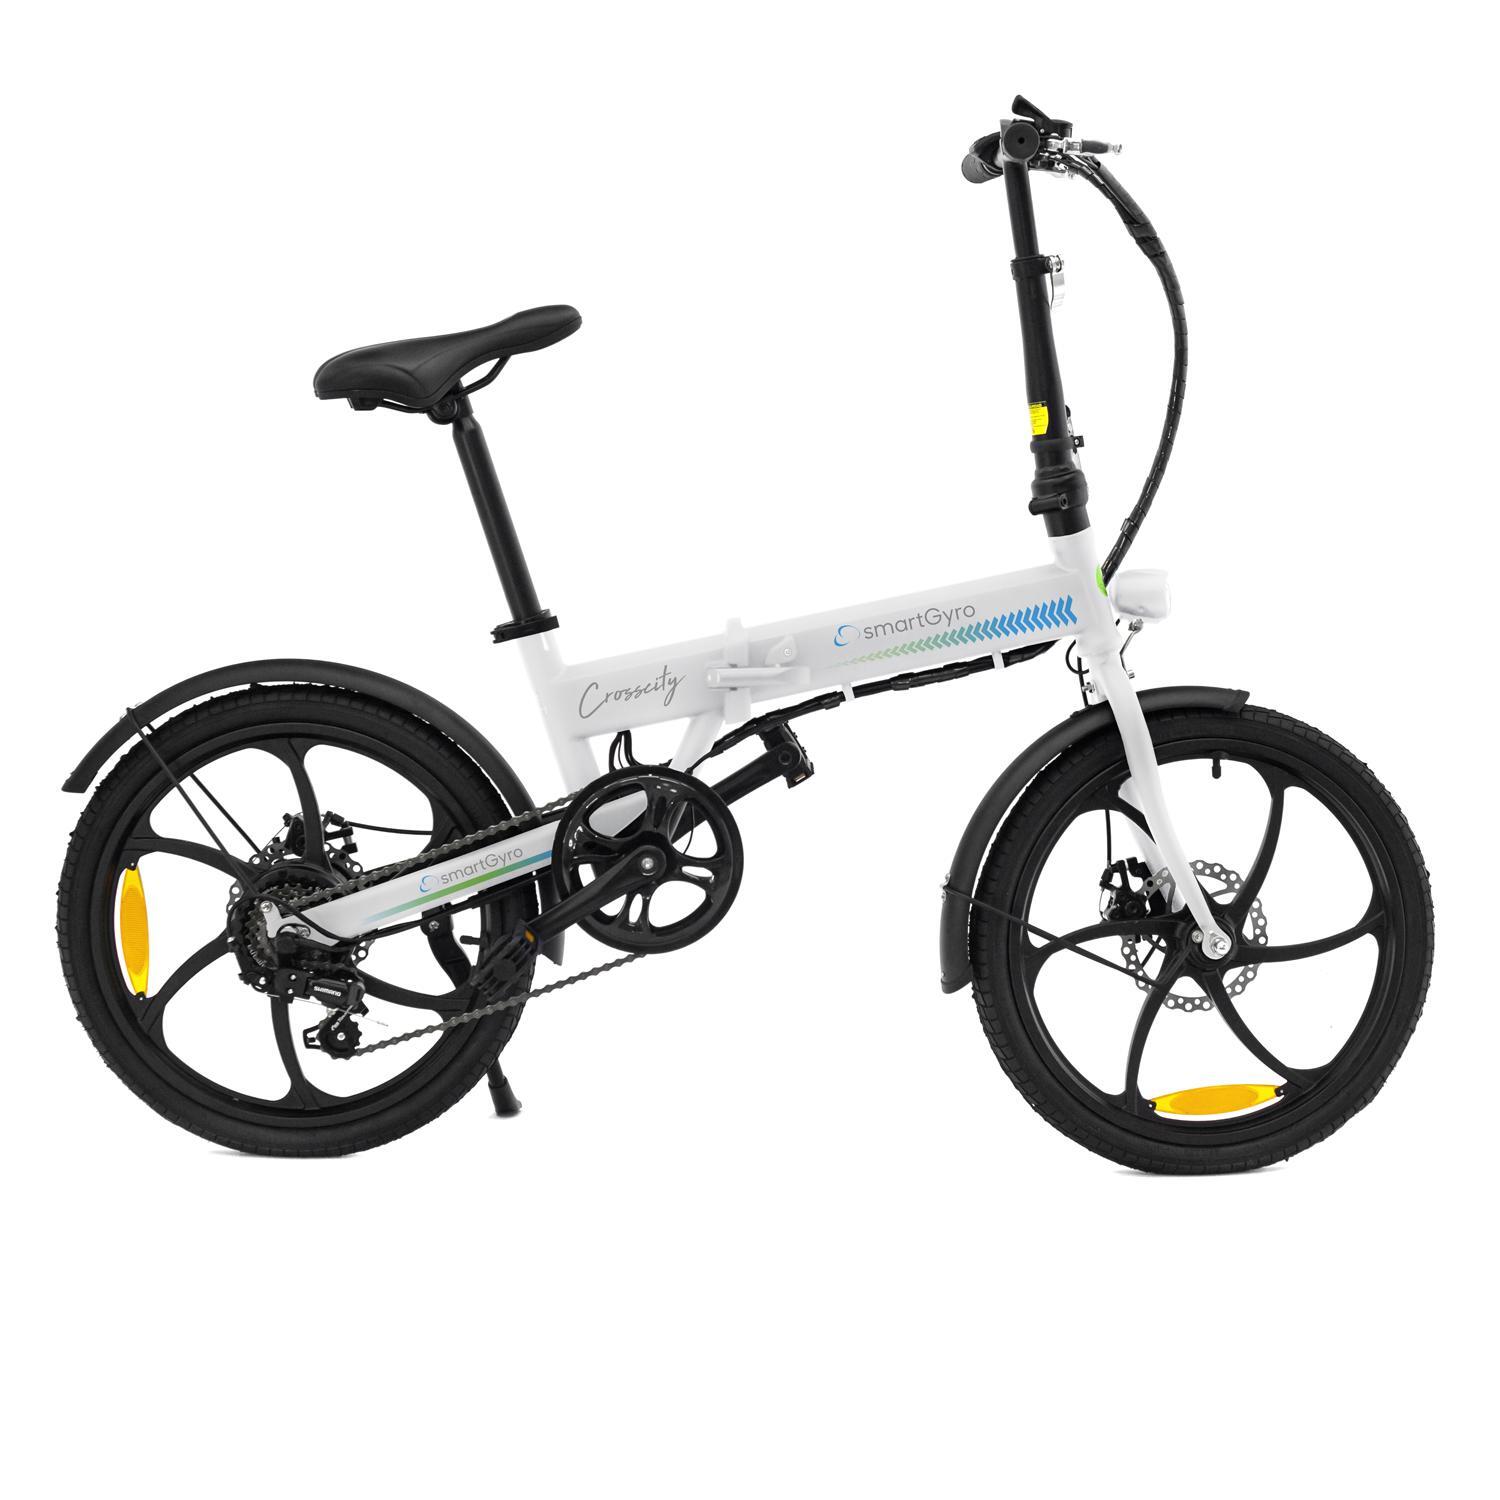 Bicicleta Elettrica Smartgyro Crosscity Bianco